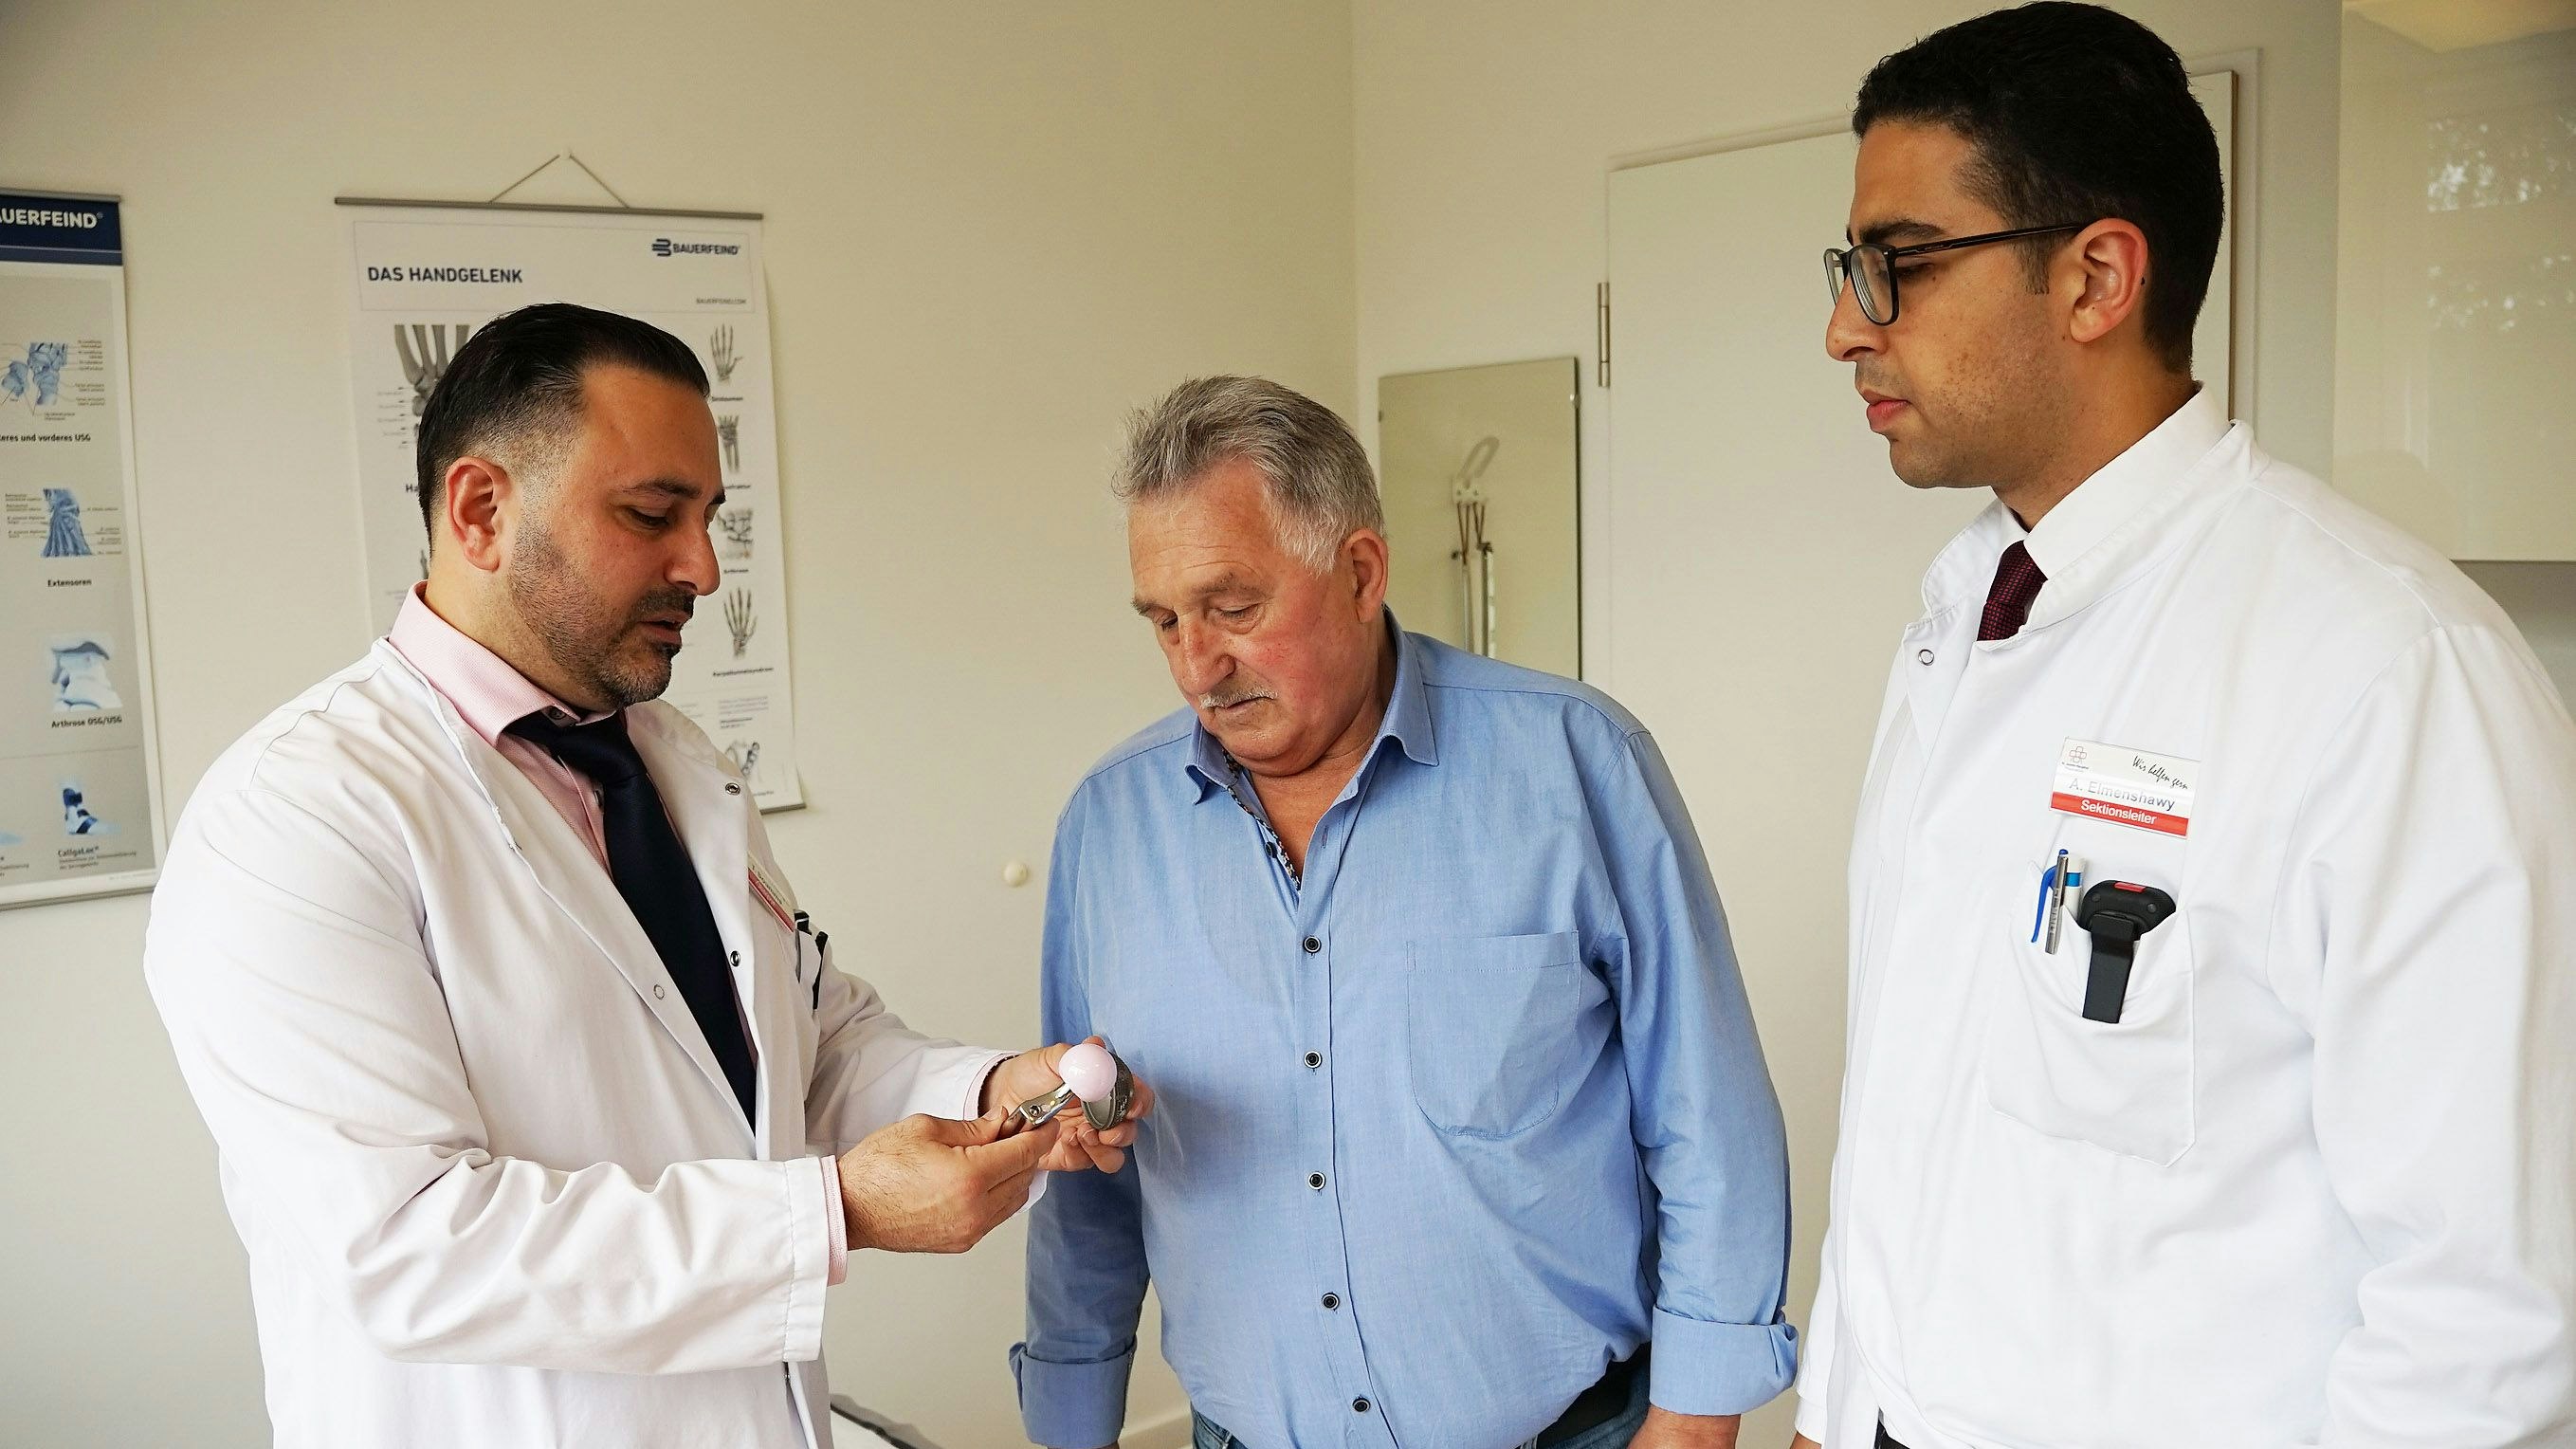 So geht's: Alfons Brengelmann (Mitte) hat ein künstliches Hüftgelenk bekommen. Darüber spricht er mit Leitendem Oberarzt Tareq Soumma (links) und Oberarzt Ahmed Elmenshawy. Foto: Meier